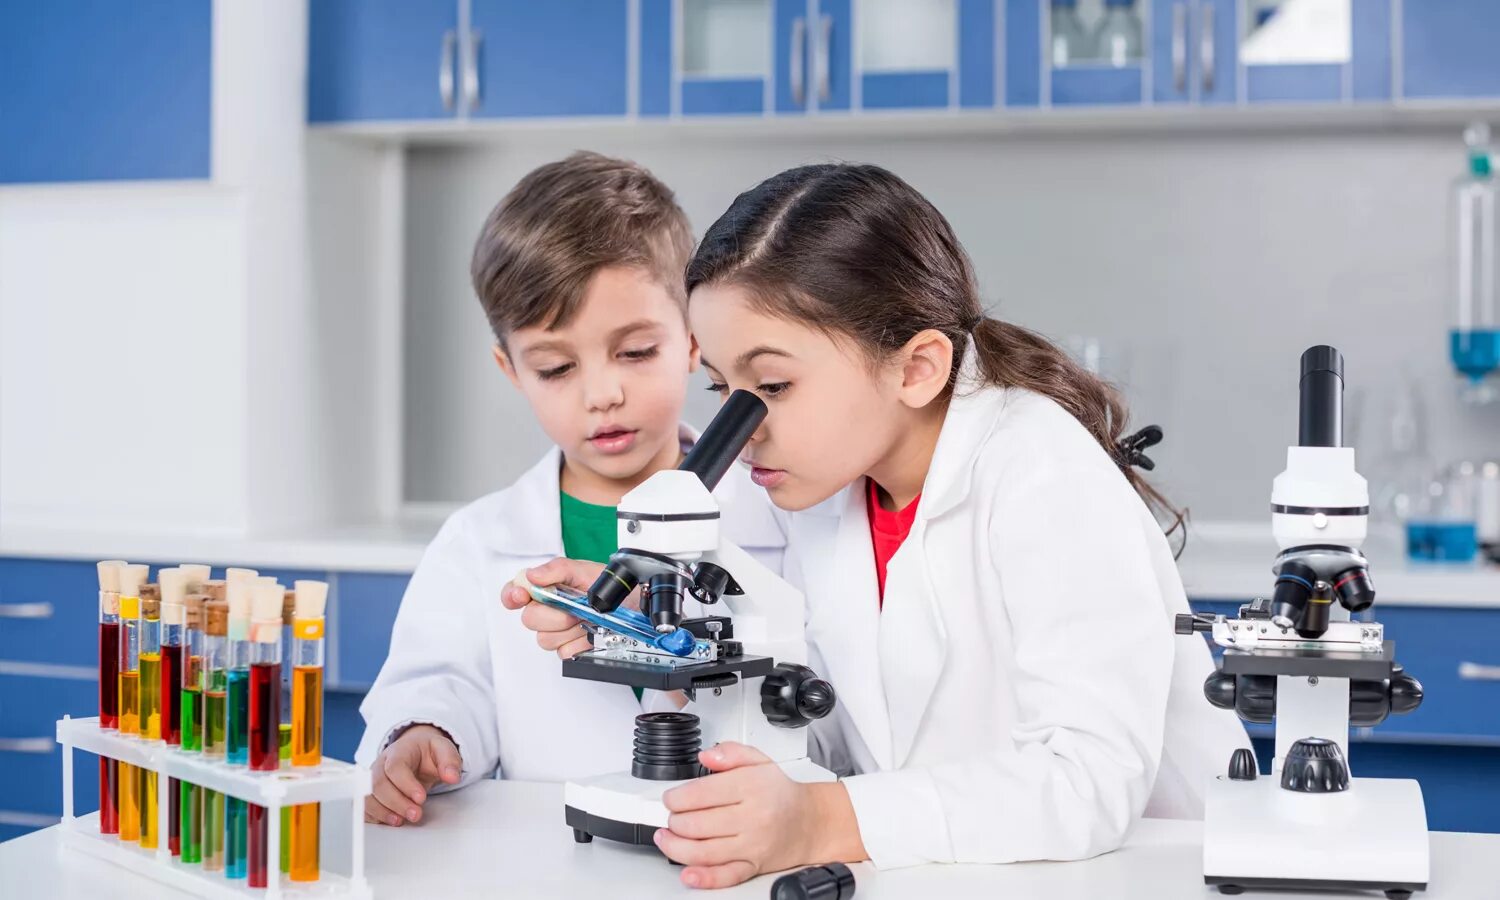 Урок биологии практика. Микроскоп для школьника. Наблюдение в микроскоп. Занятие для детей про микроскоп. Цифровые микроскопы для школьников.